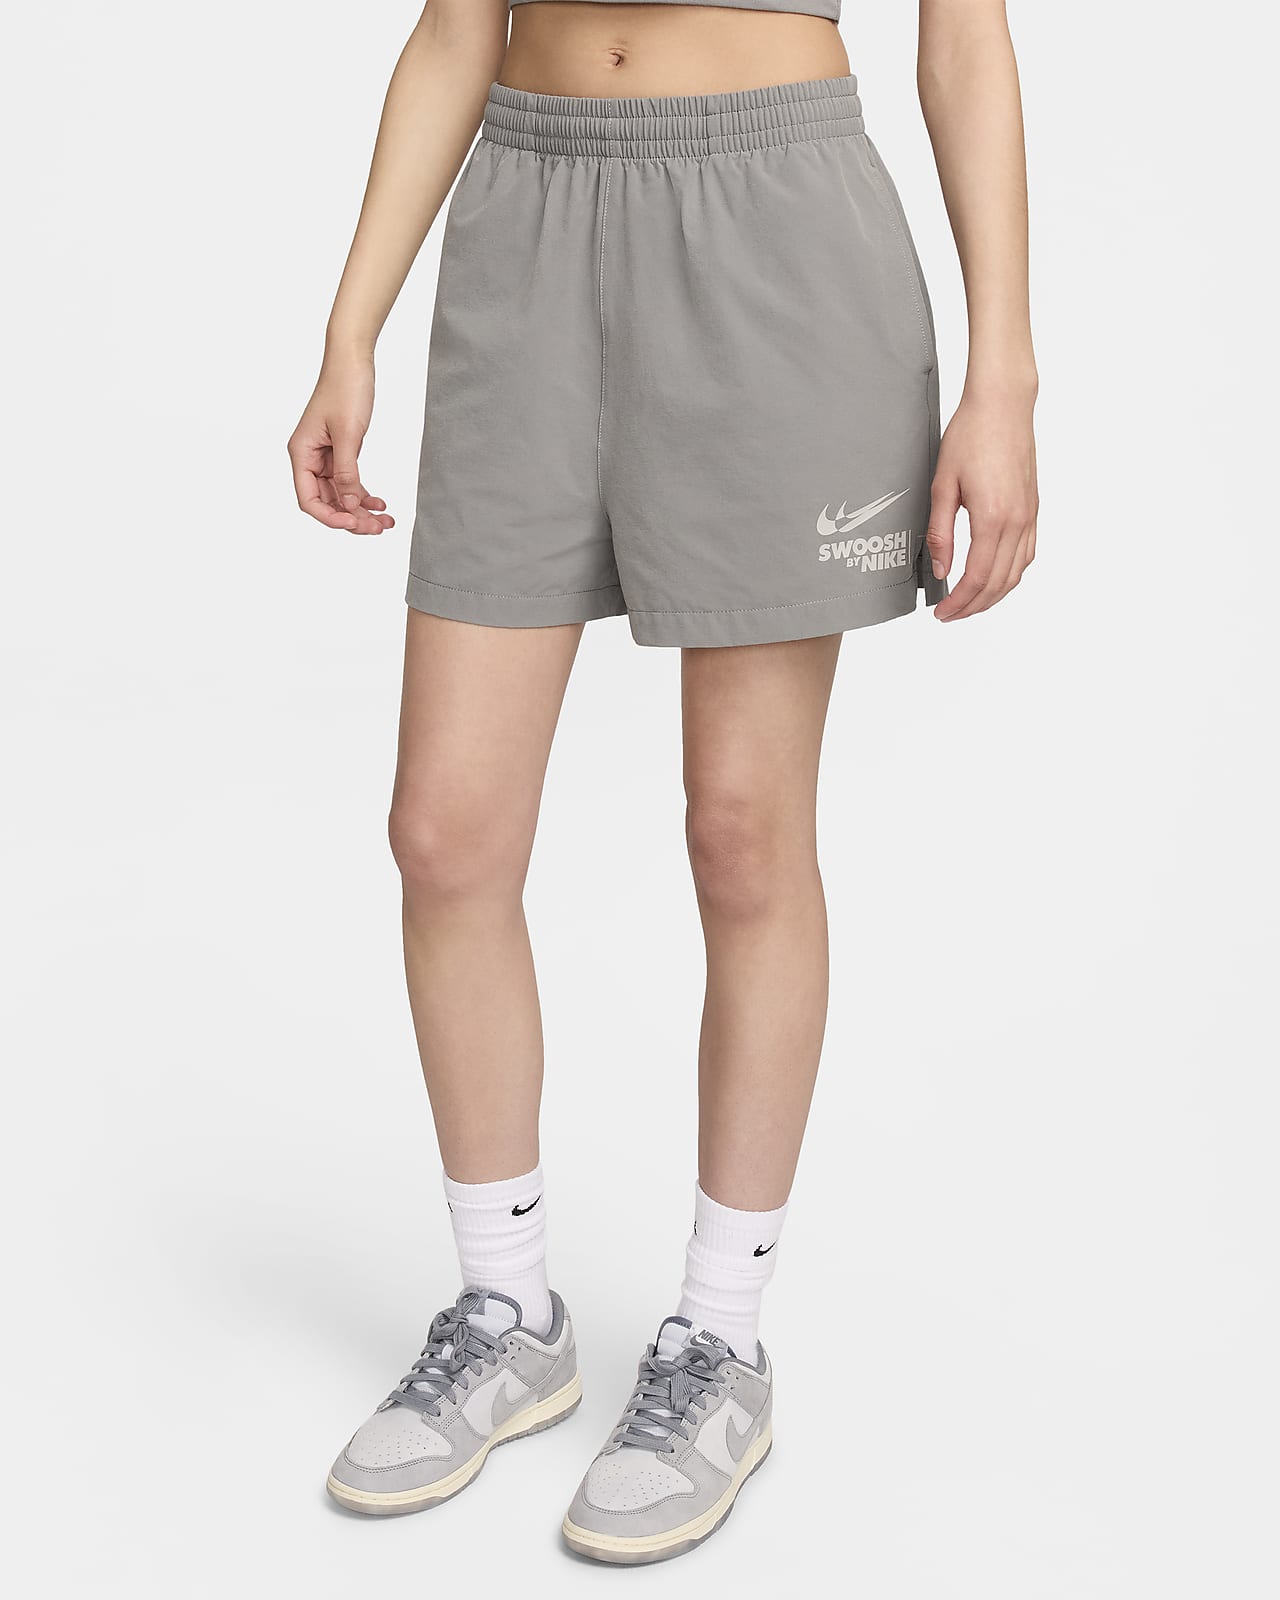 Calções entrançados Nike Sportswear para mulher